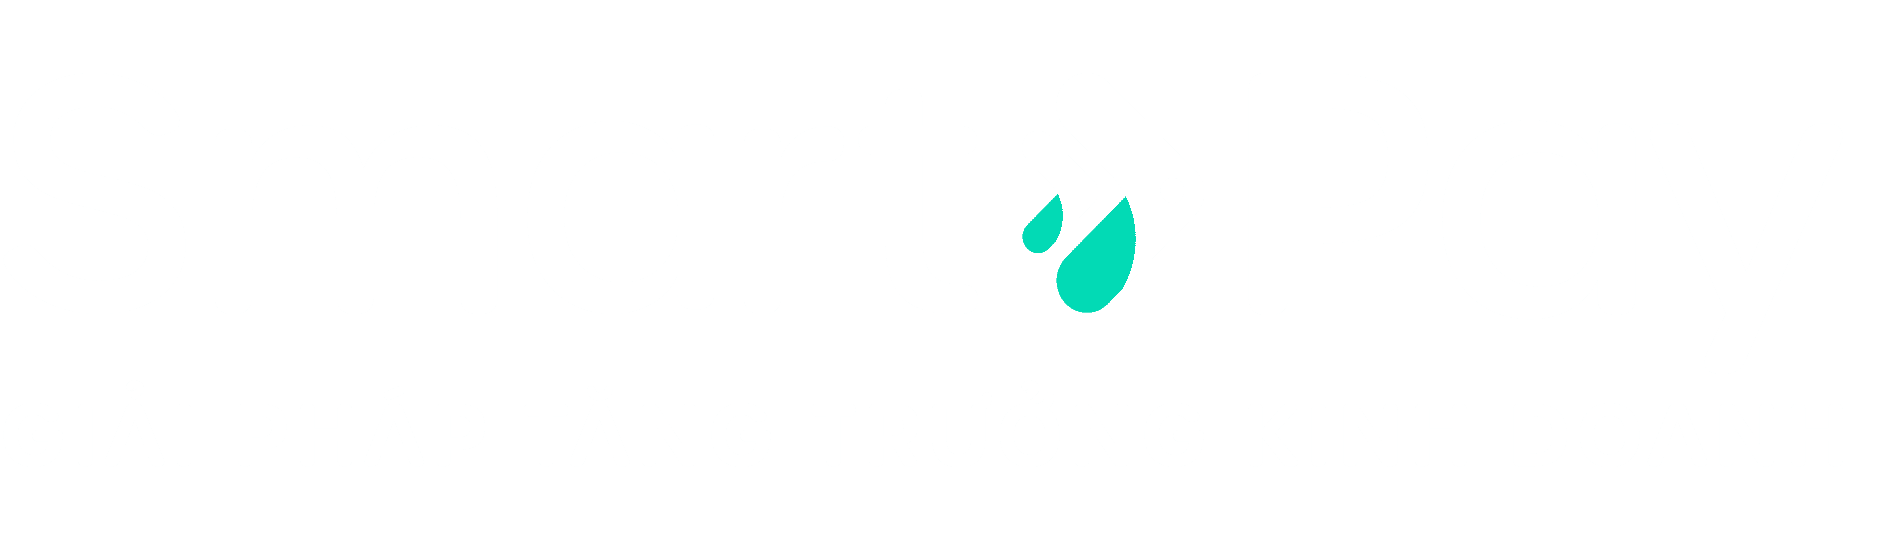 Smartpay Logo